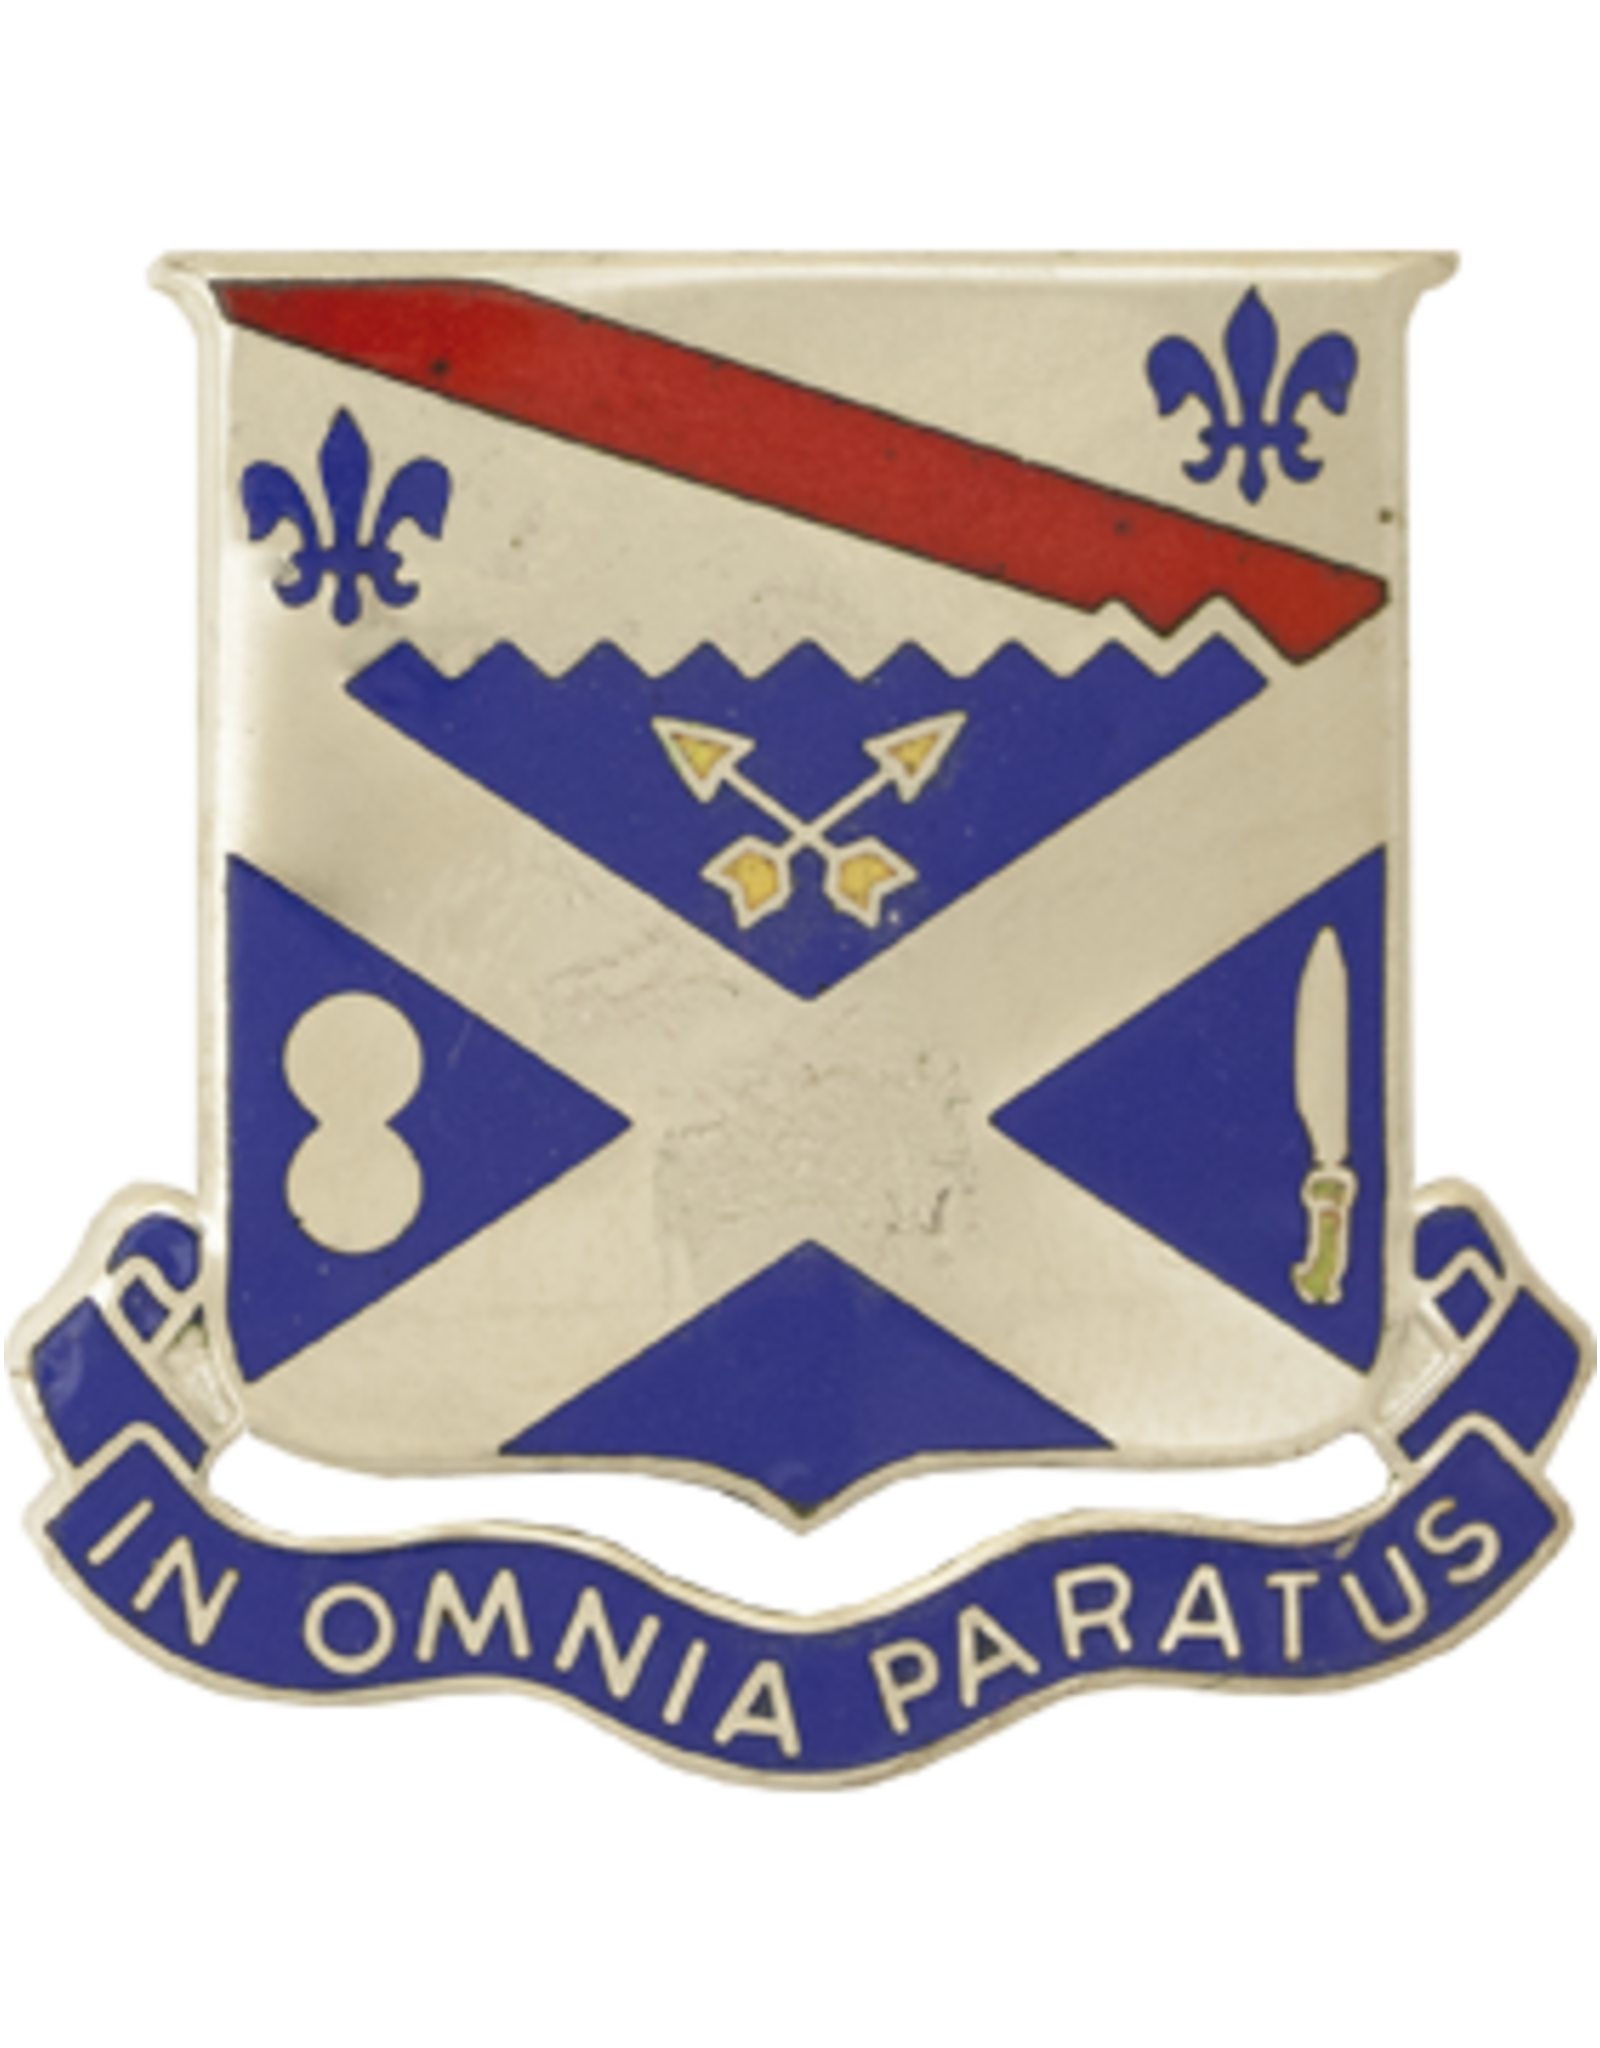 18th Infantry Unit Crest - In Omnia Paratus